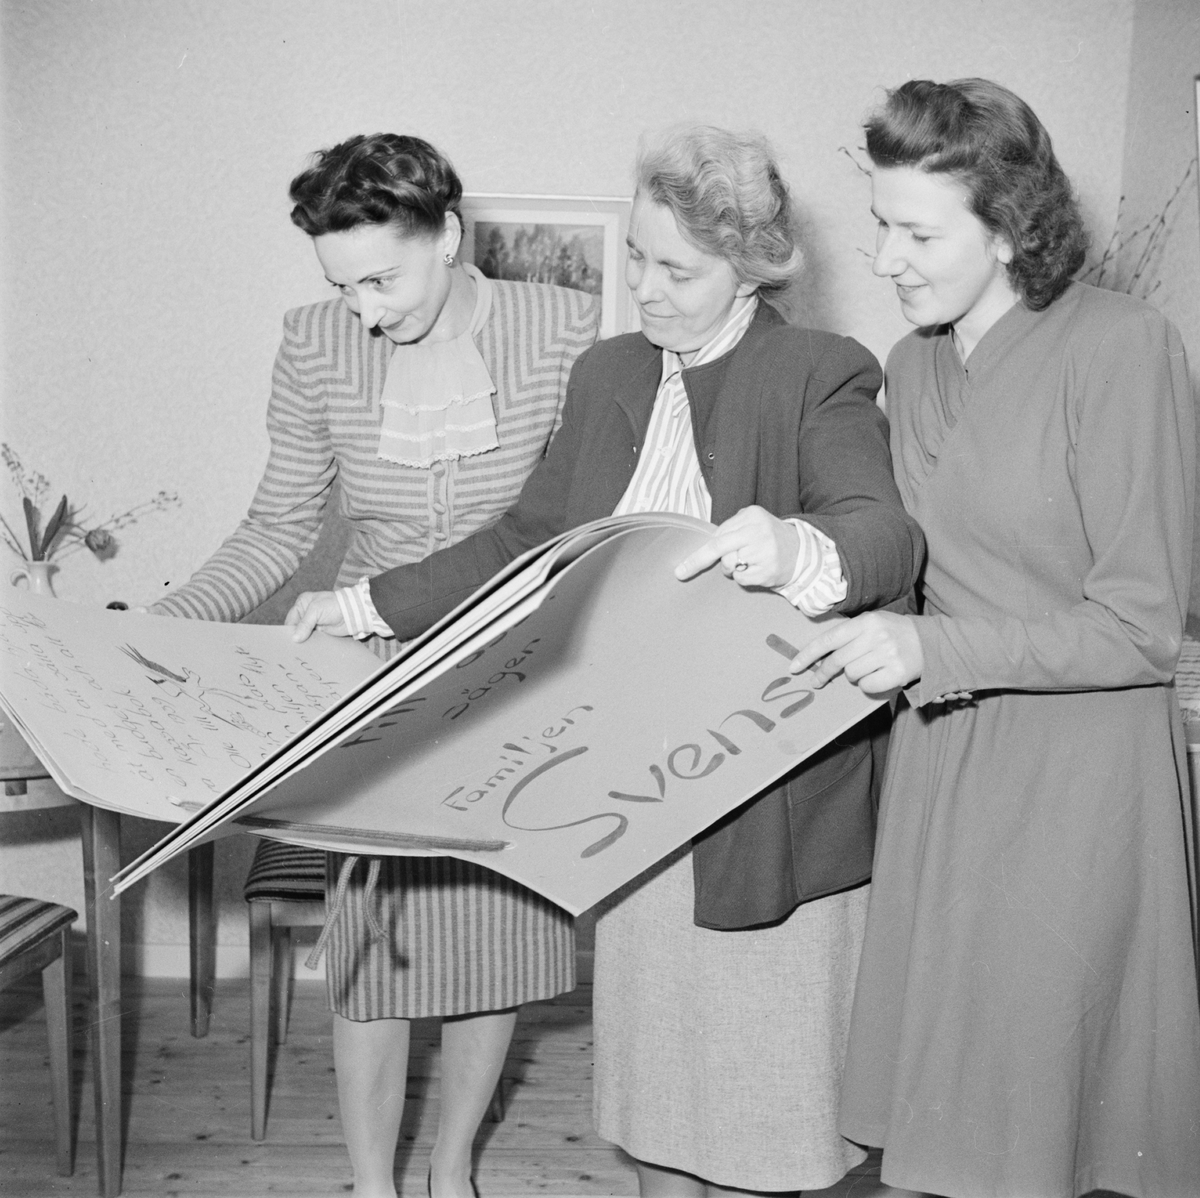 M Andersson, Hedvig Palmgren och E Eikeenfelt med utställningskatalog, heminredningsutställning på Gunstagatan, Uppsala april 1947